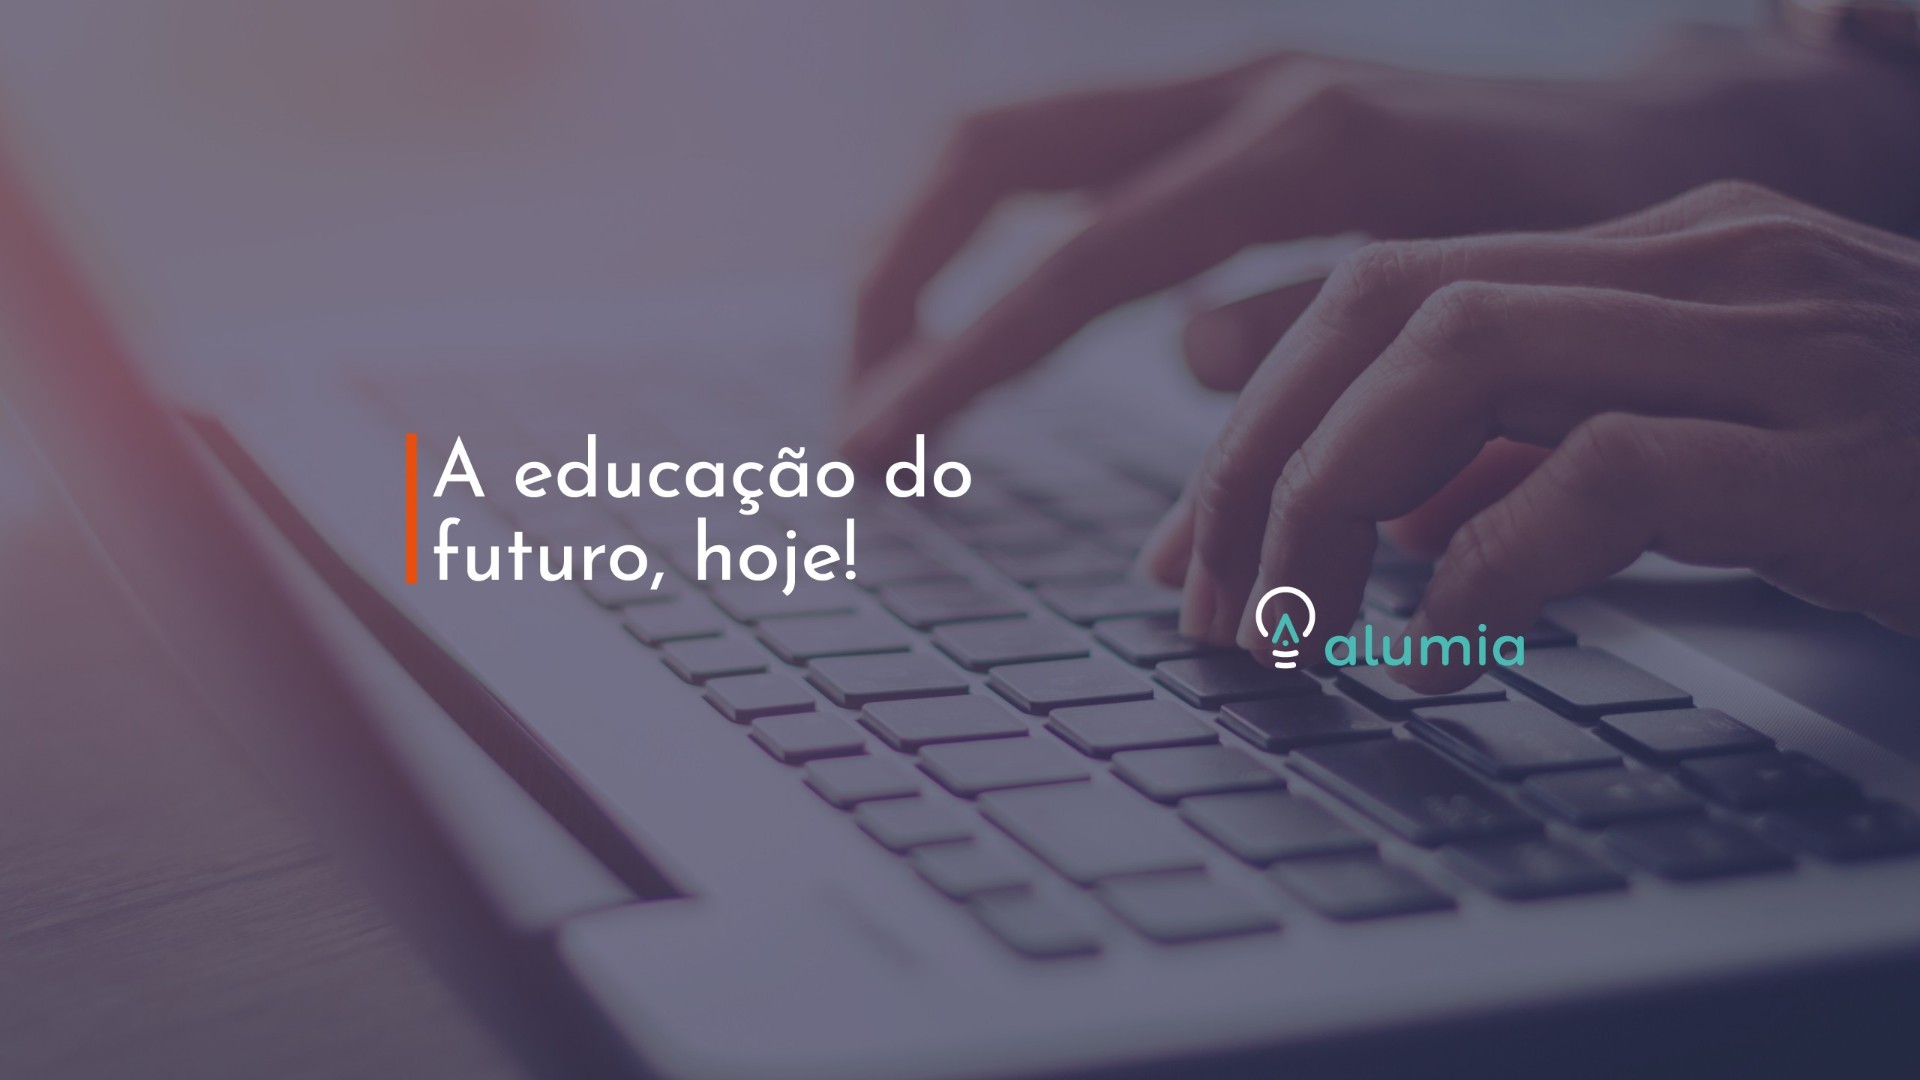 Já pensou em trabalhar em uma startup? Essas empresas estão contratando no Brasil